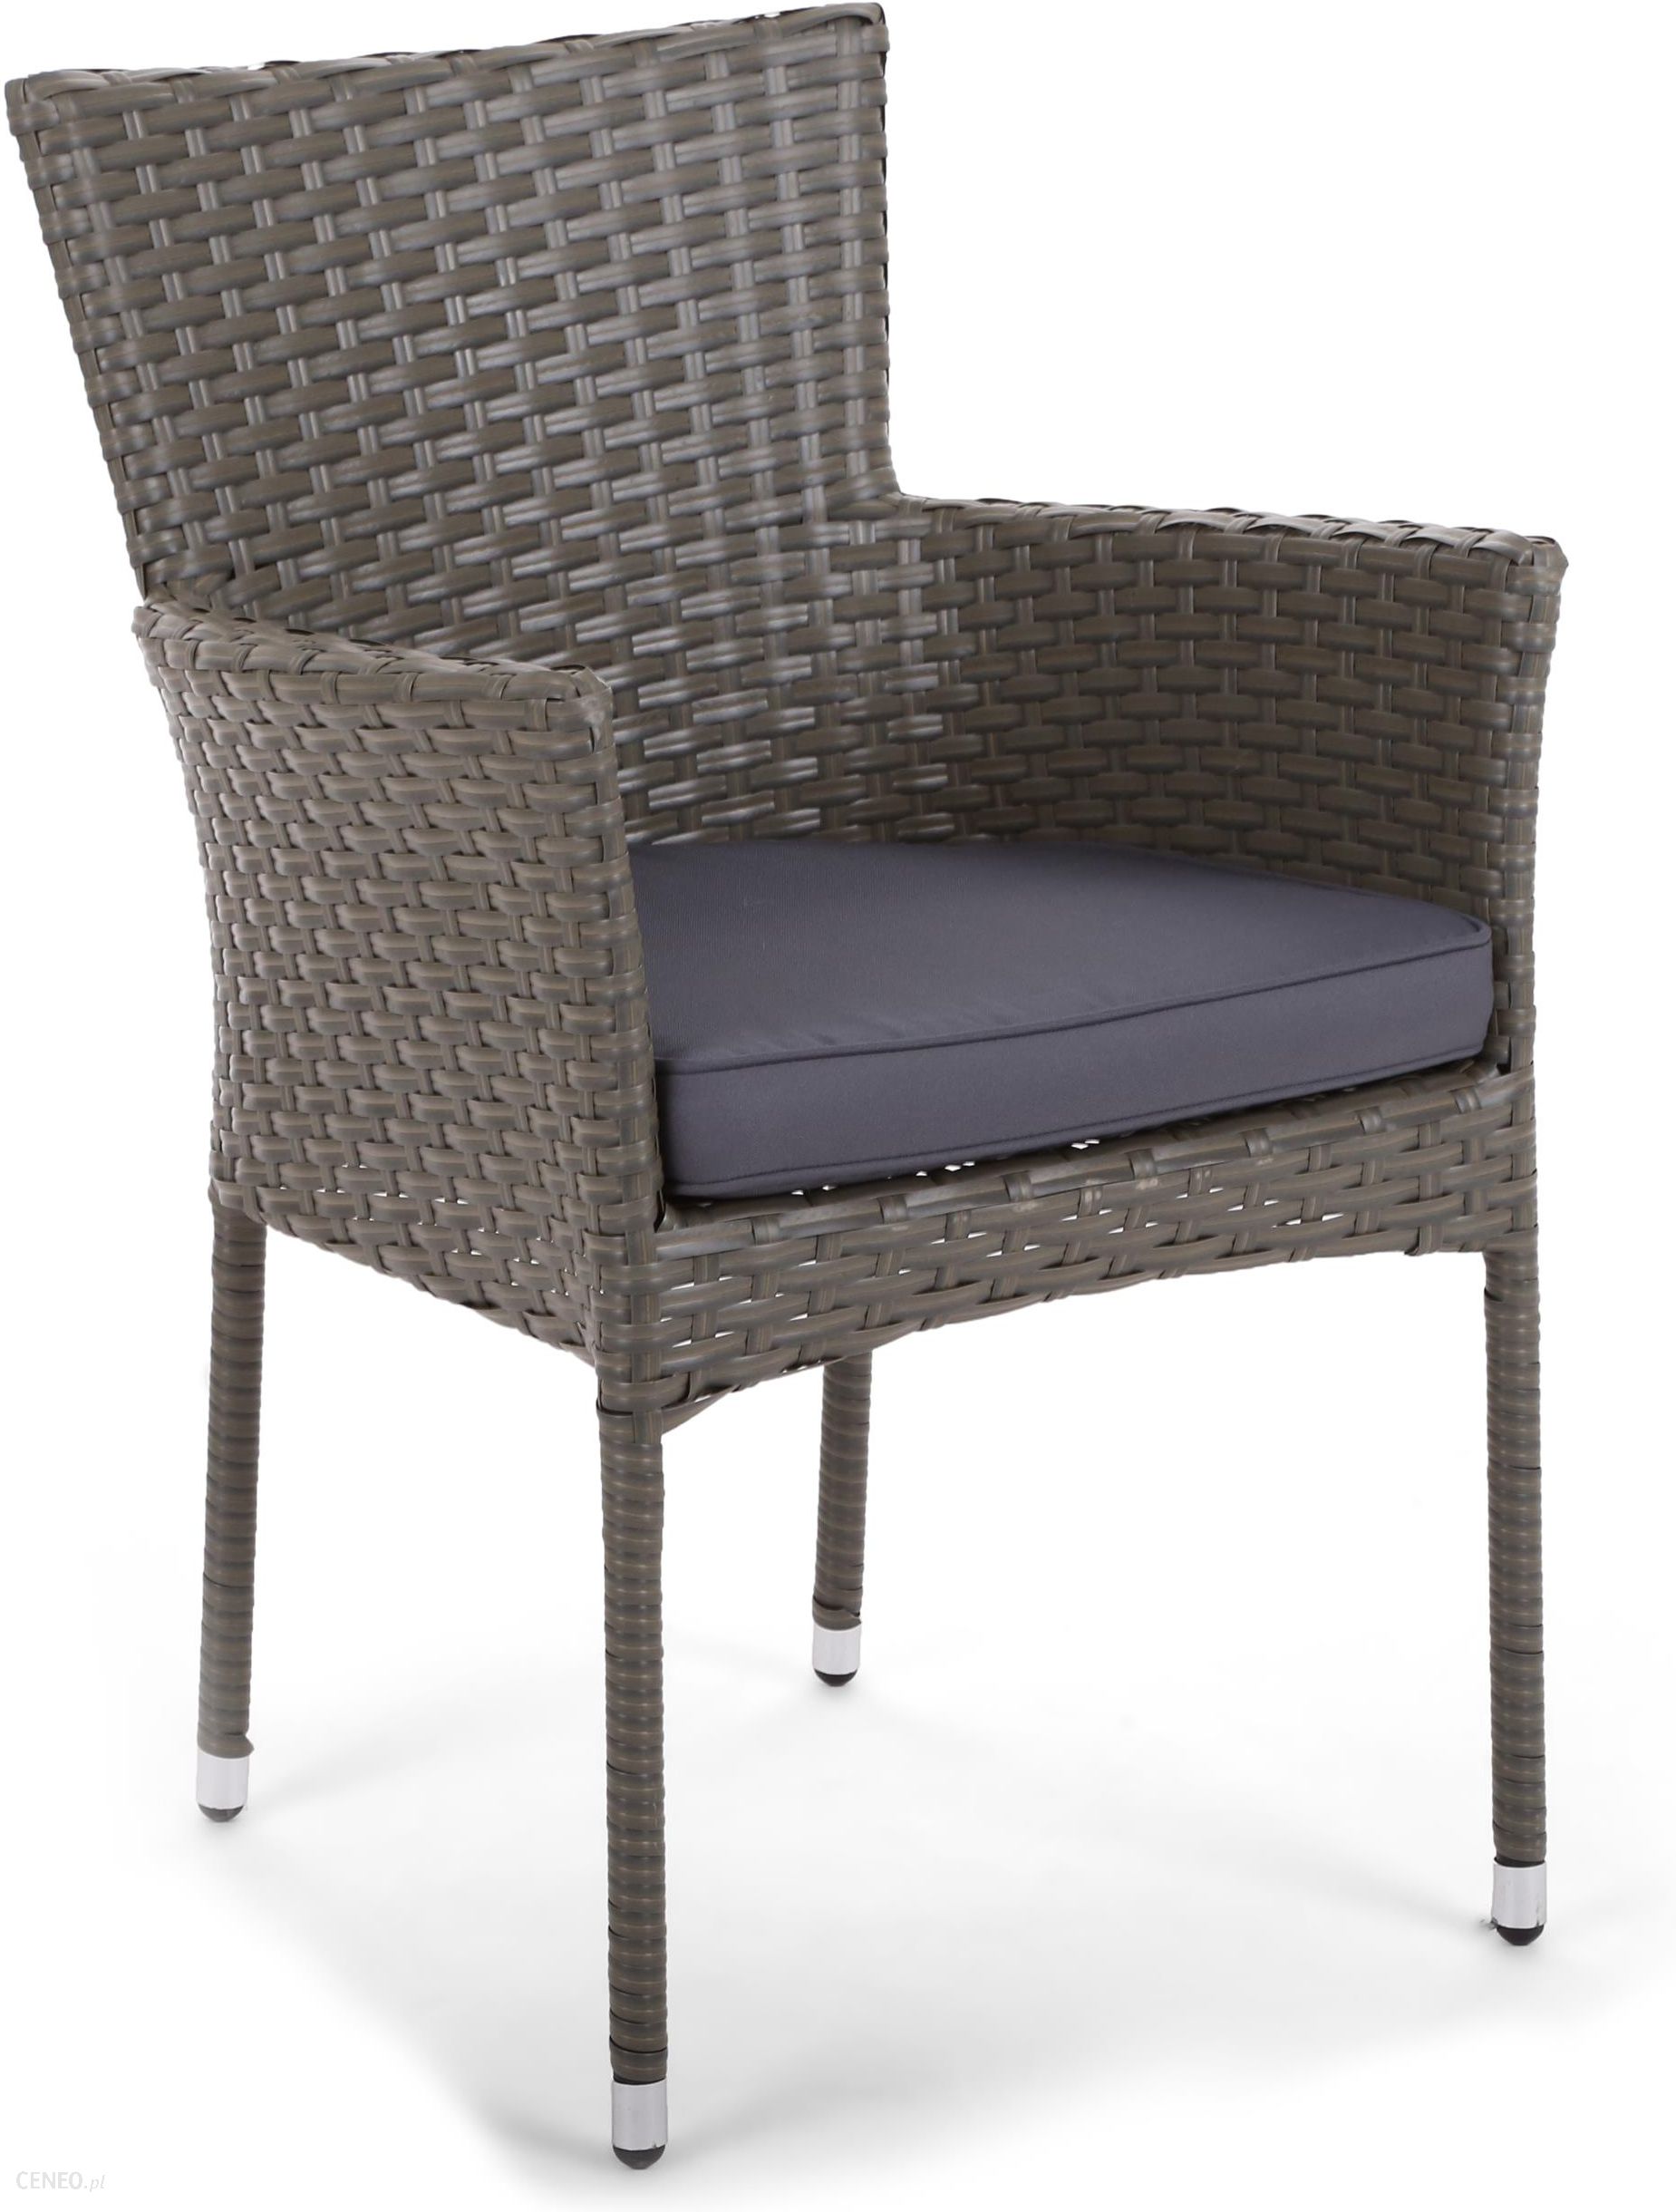 Krzeslo Ogrodowe Home Garden Fotel Flores Grey Z Poduszka 194005 Ceny I Opinie Ceneo Pl